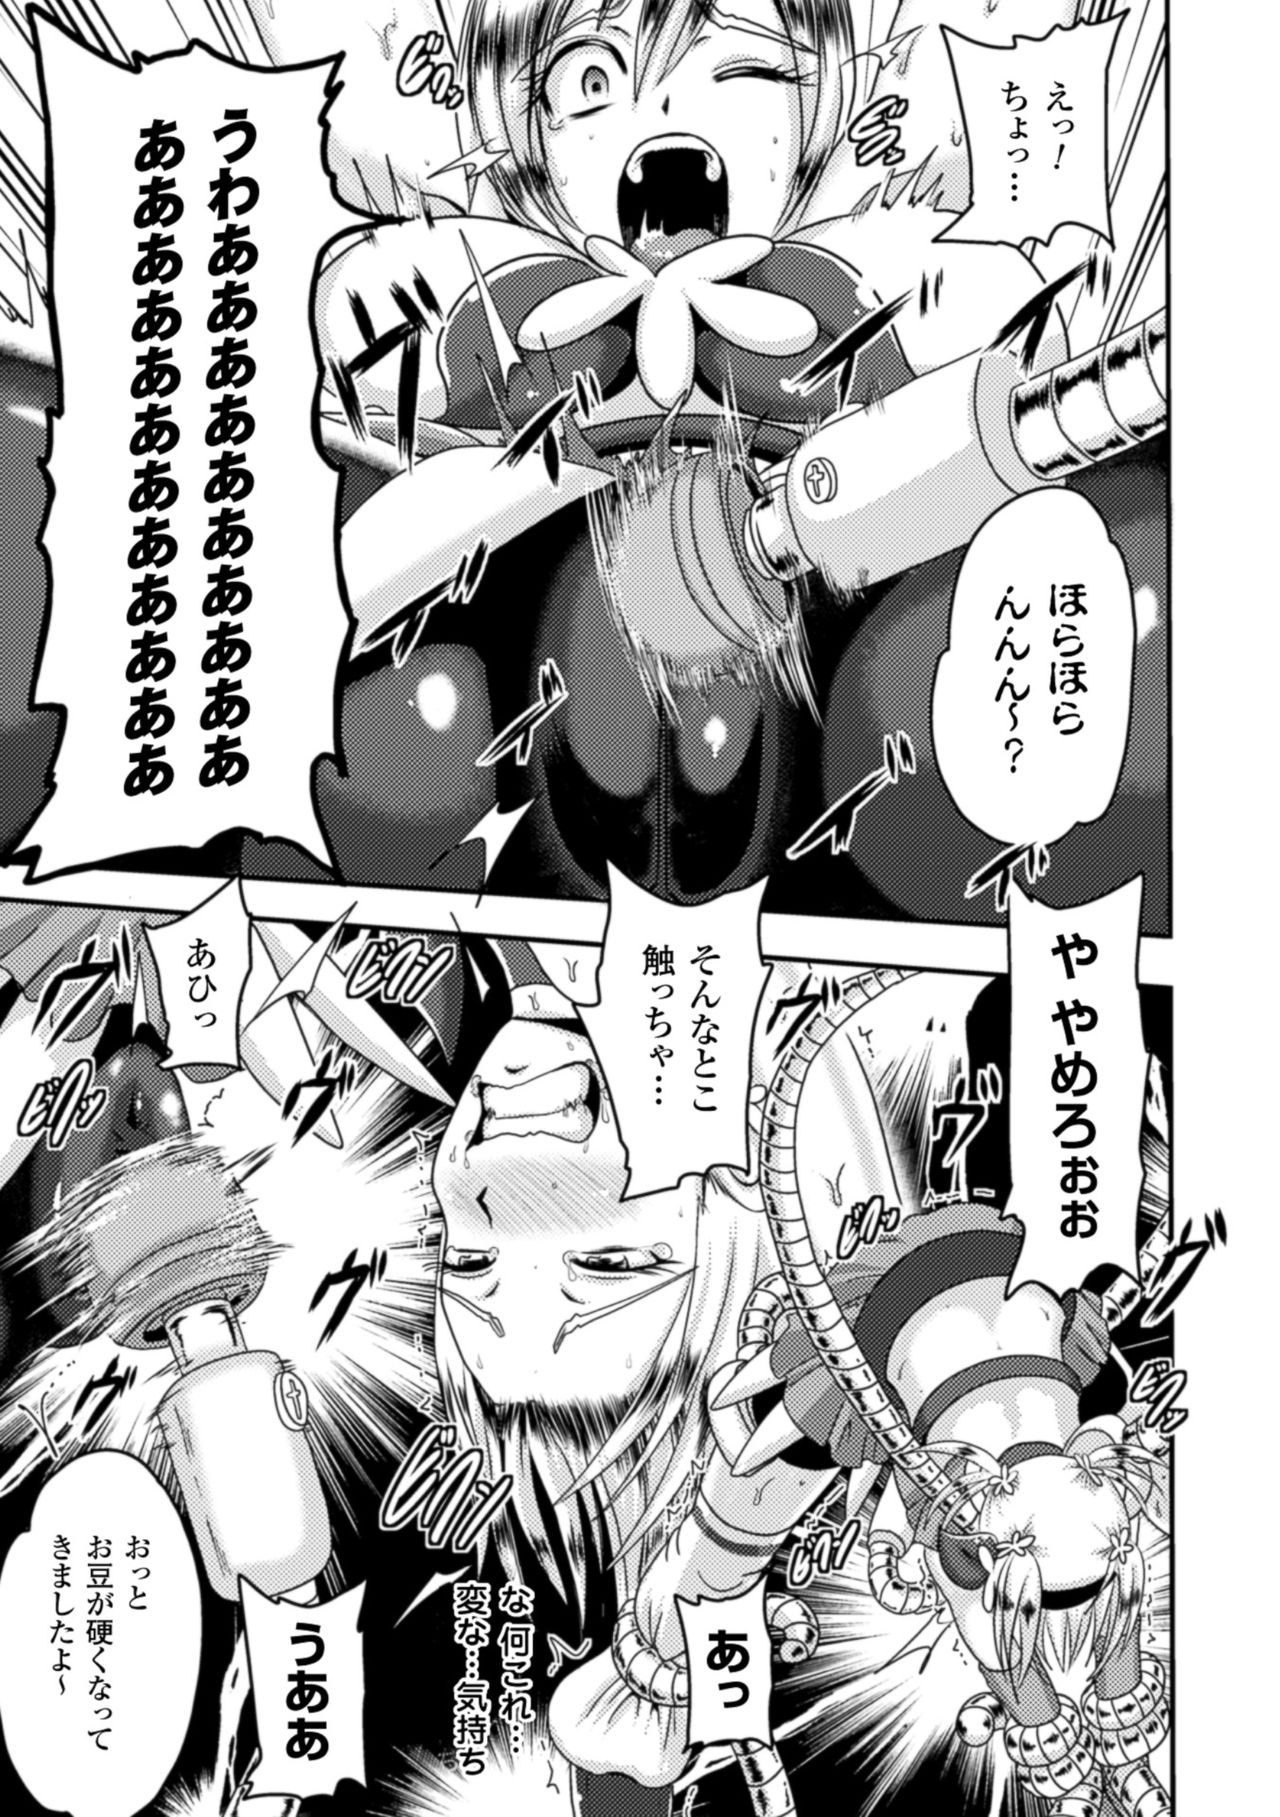 [Akuochisukii Sensei] Akuochisukii Sensei no Heroine Haiboku no Houteishiki - Equation of Heroine's defeat by Mr. Akuochisukii [Digital] 10